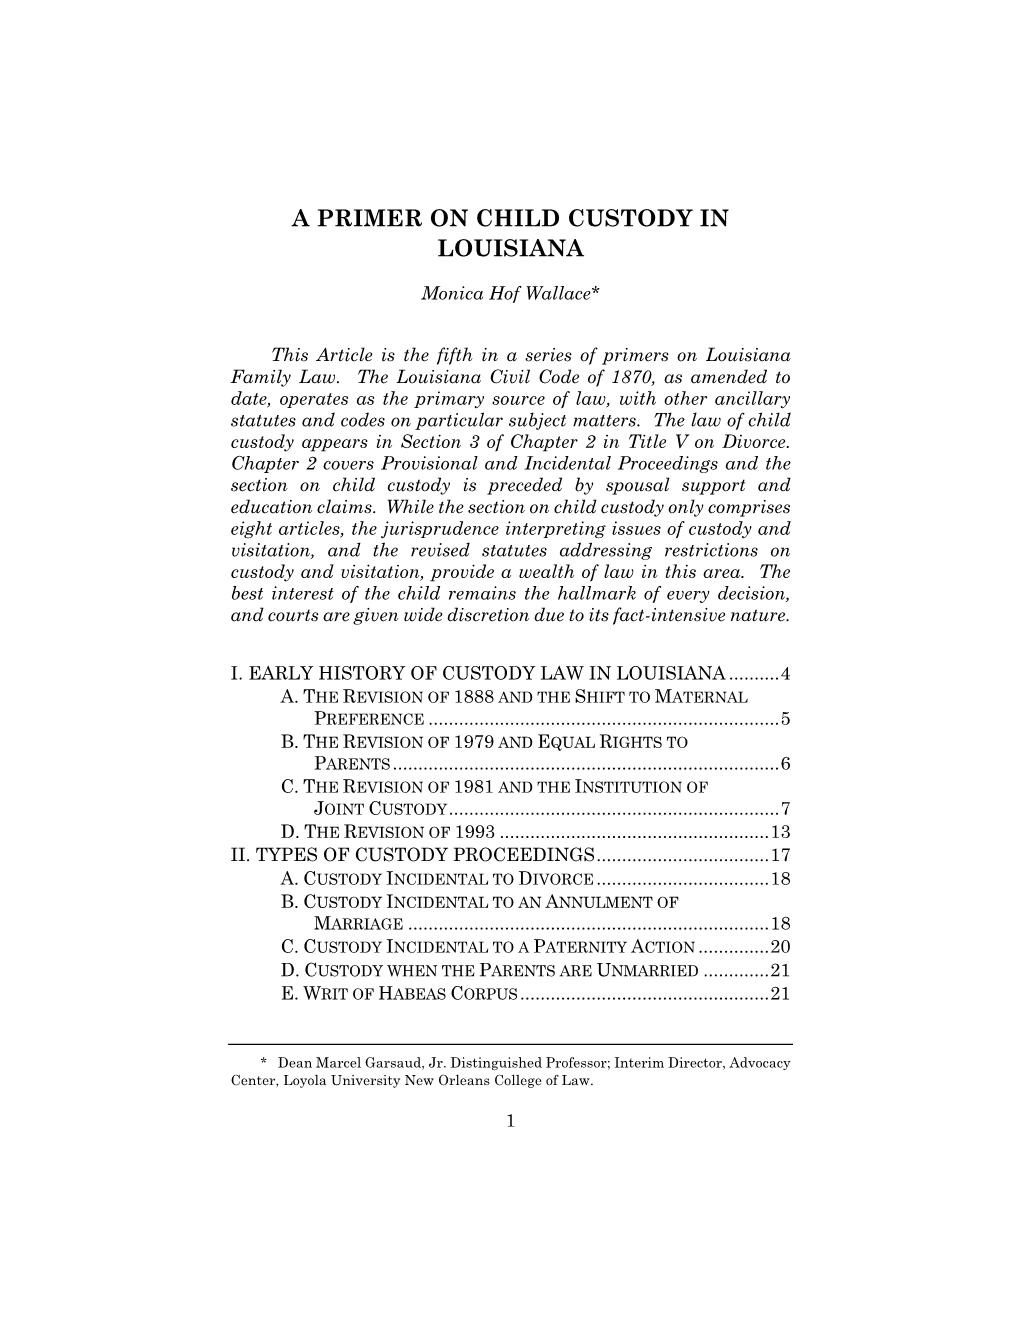 A Primer on Child Custody in Louisiana